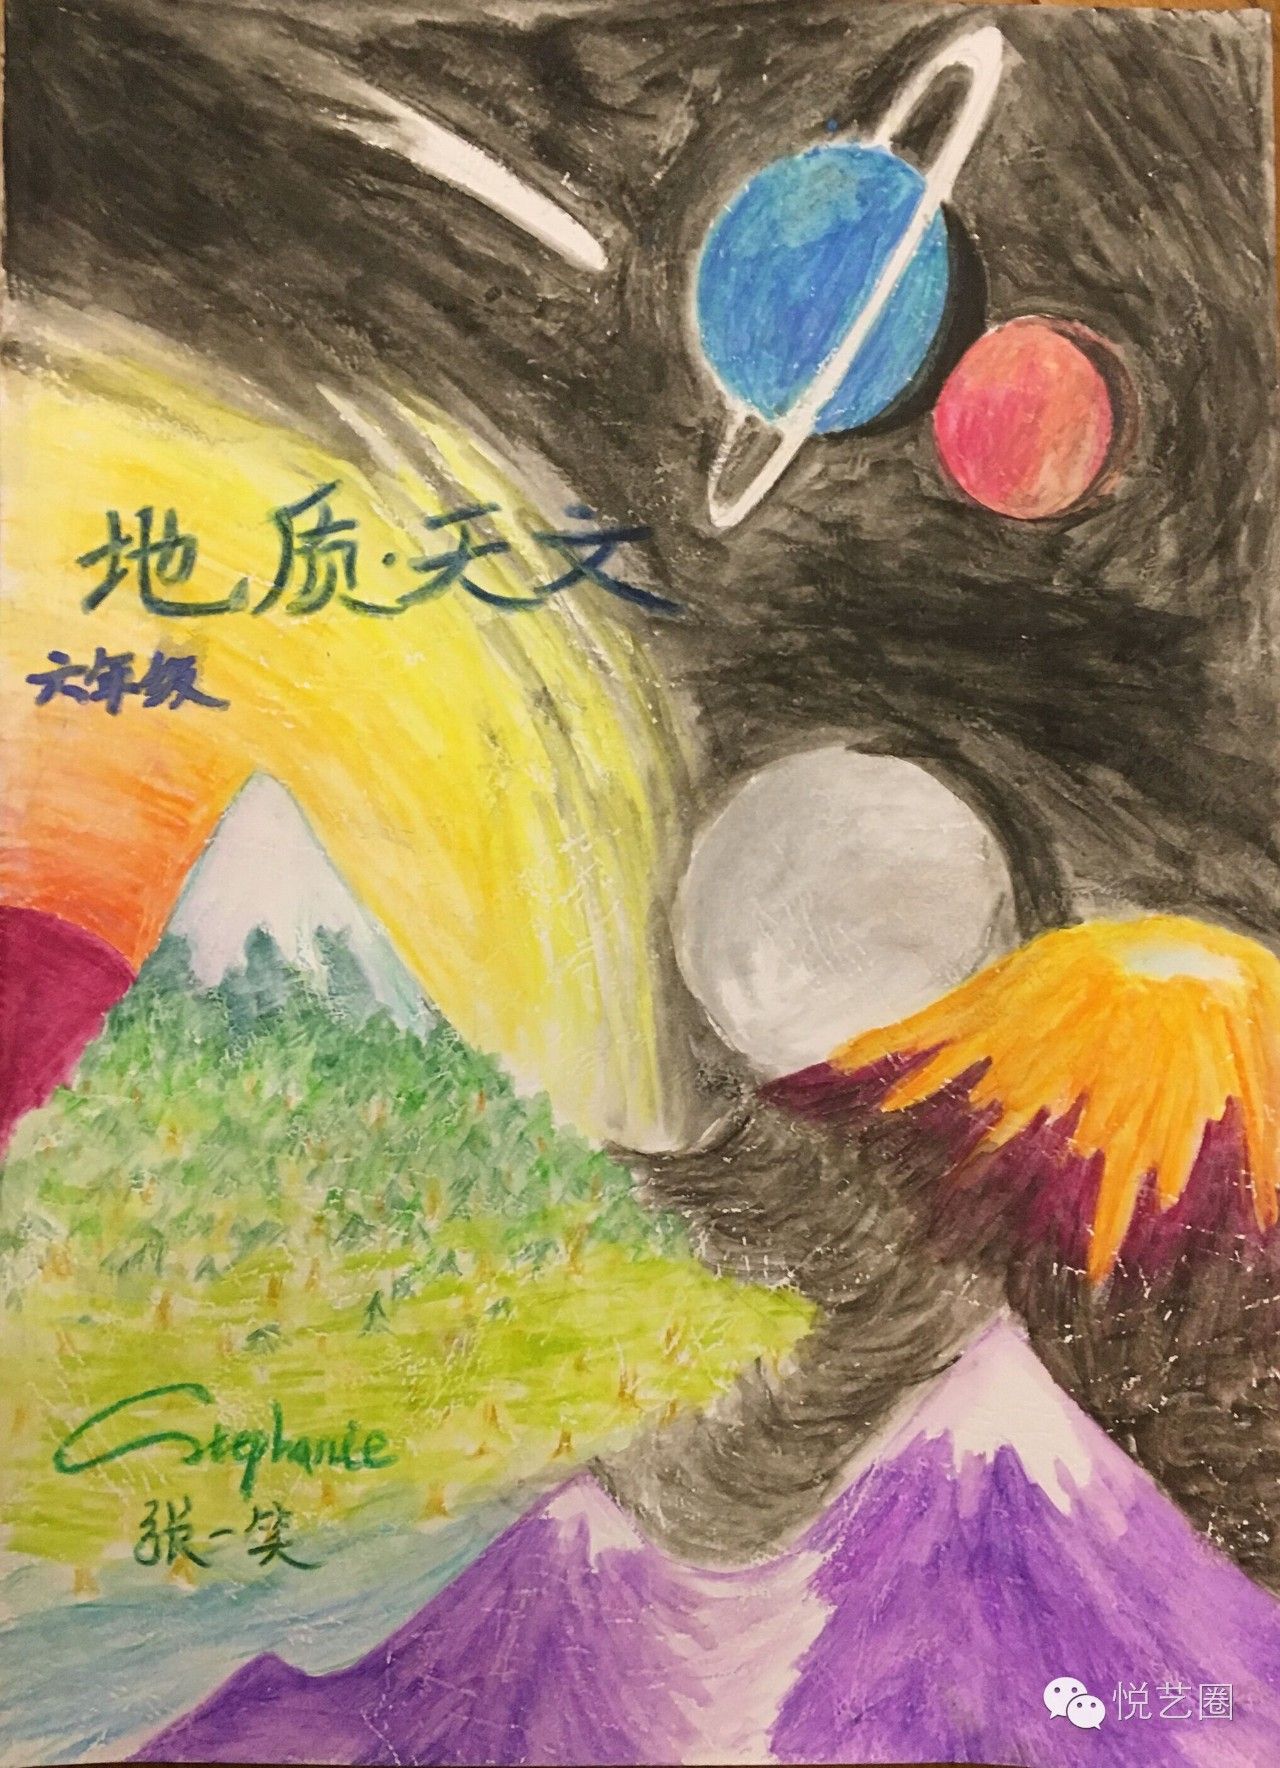 感动哭了中国这群小学生手绘的课本竟这么美